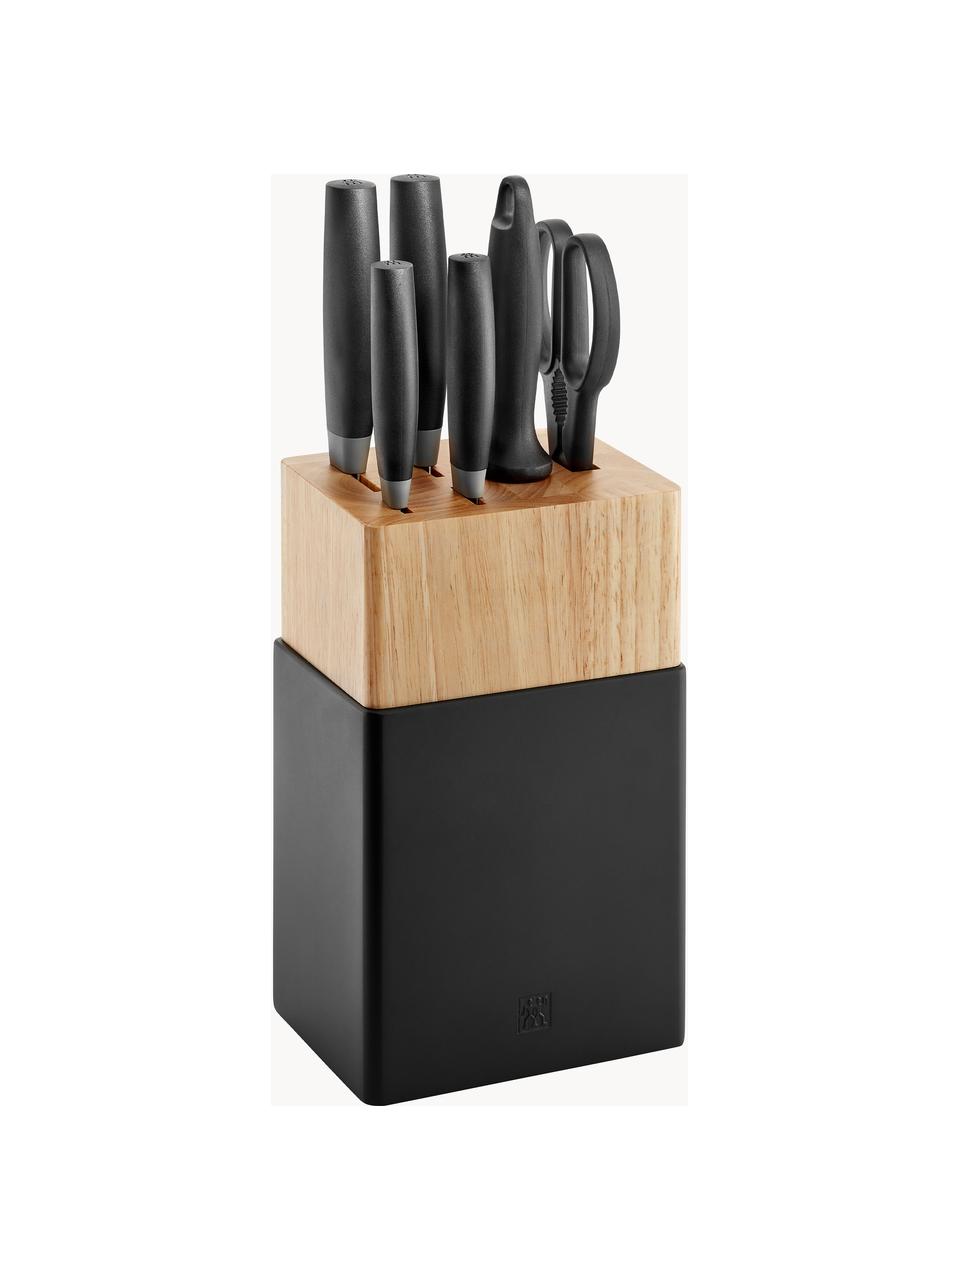 Messenblok Now van rubberhout, set van 7, Handvatten: kunststof, Rubberhout, zwart, zilverkleurig, Set met verschillende formaten